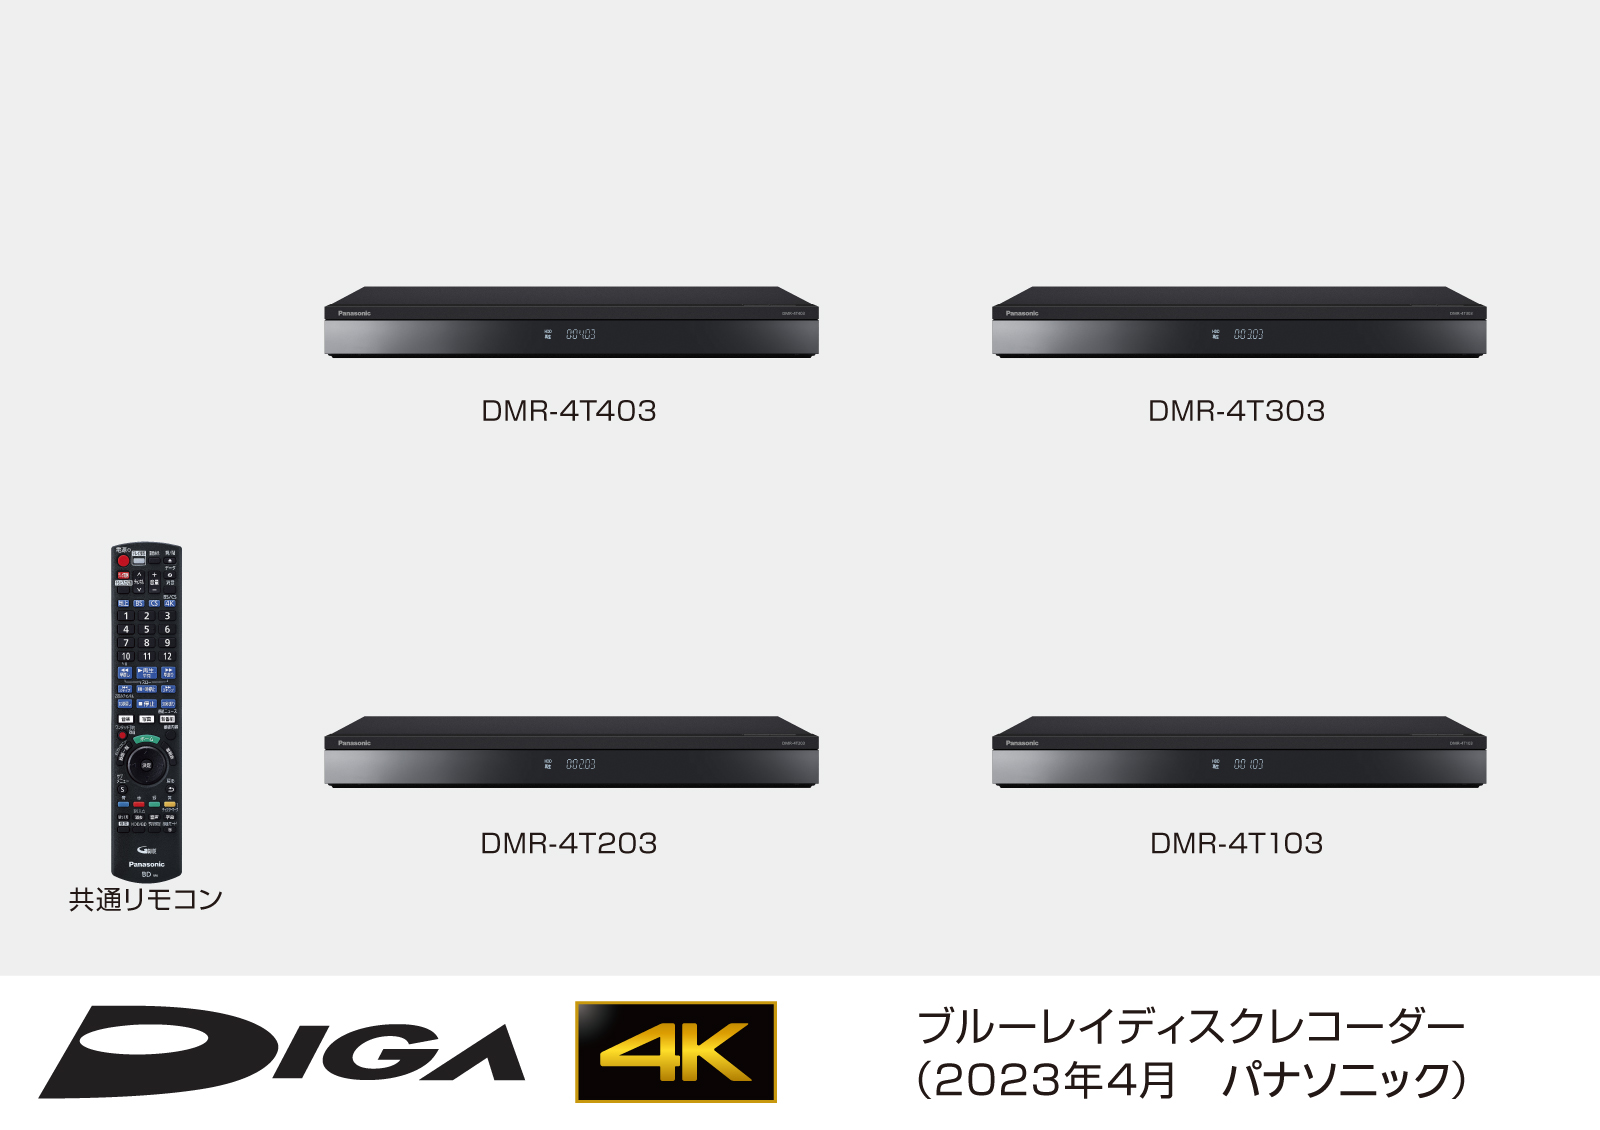 パナソニック ブルーレイレコーダー 4K ディーガ 2TB DMR-4T203 Panasonic DIGA 3番組同時録画モデル 4K